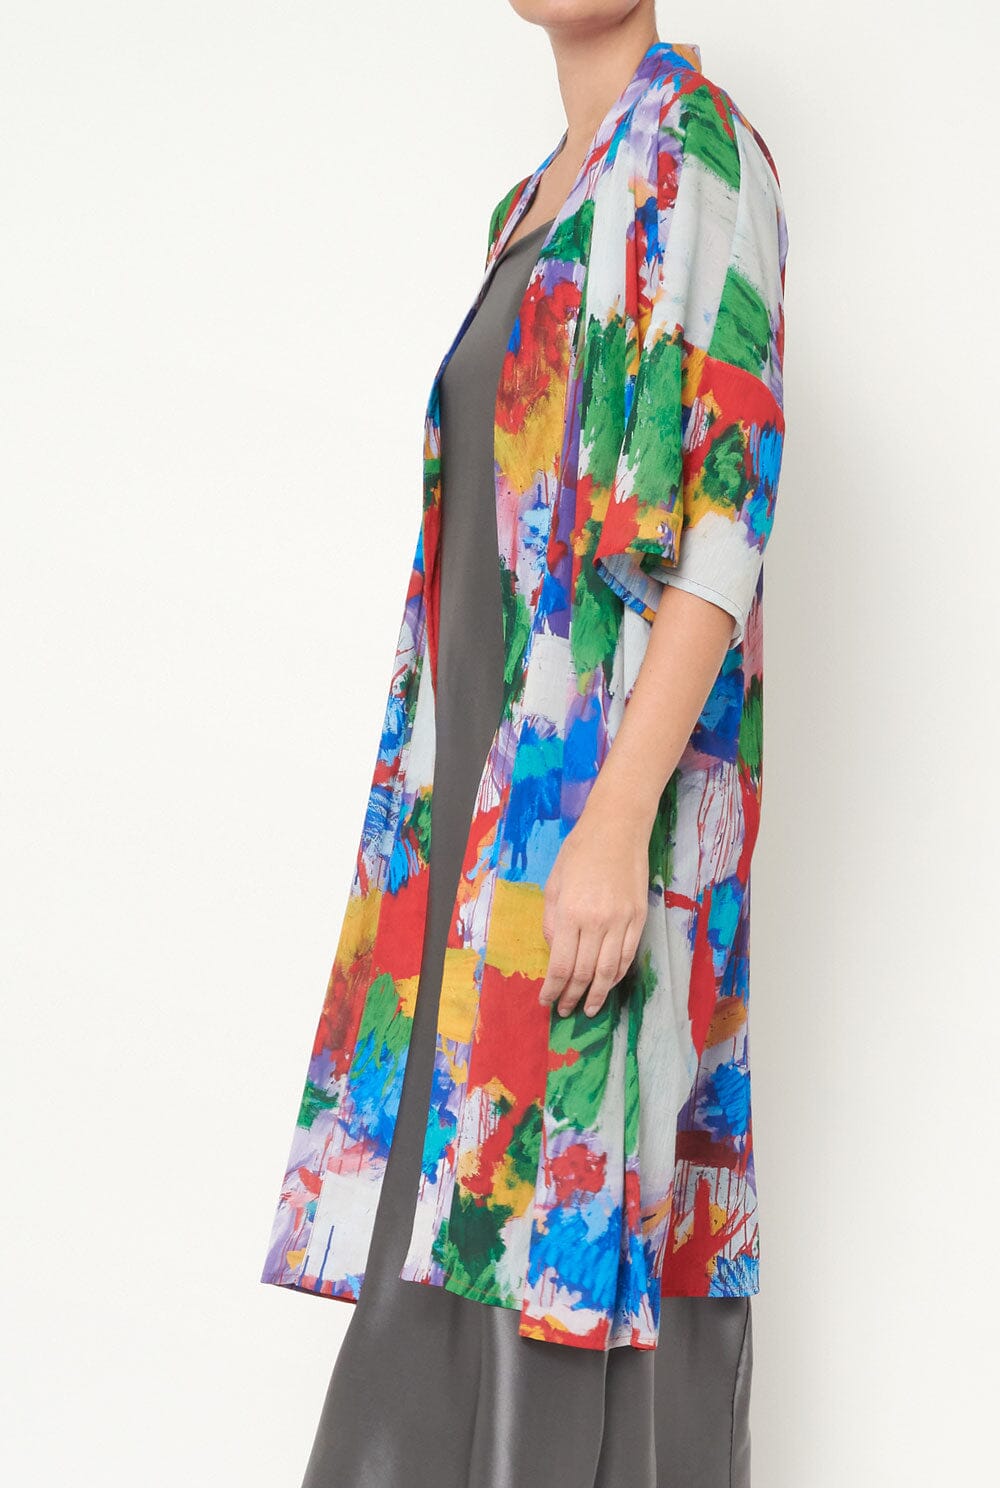 Kimono "Mendels" Capes & shawls Arena Martinez 